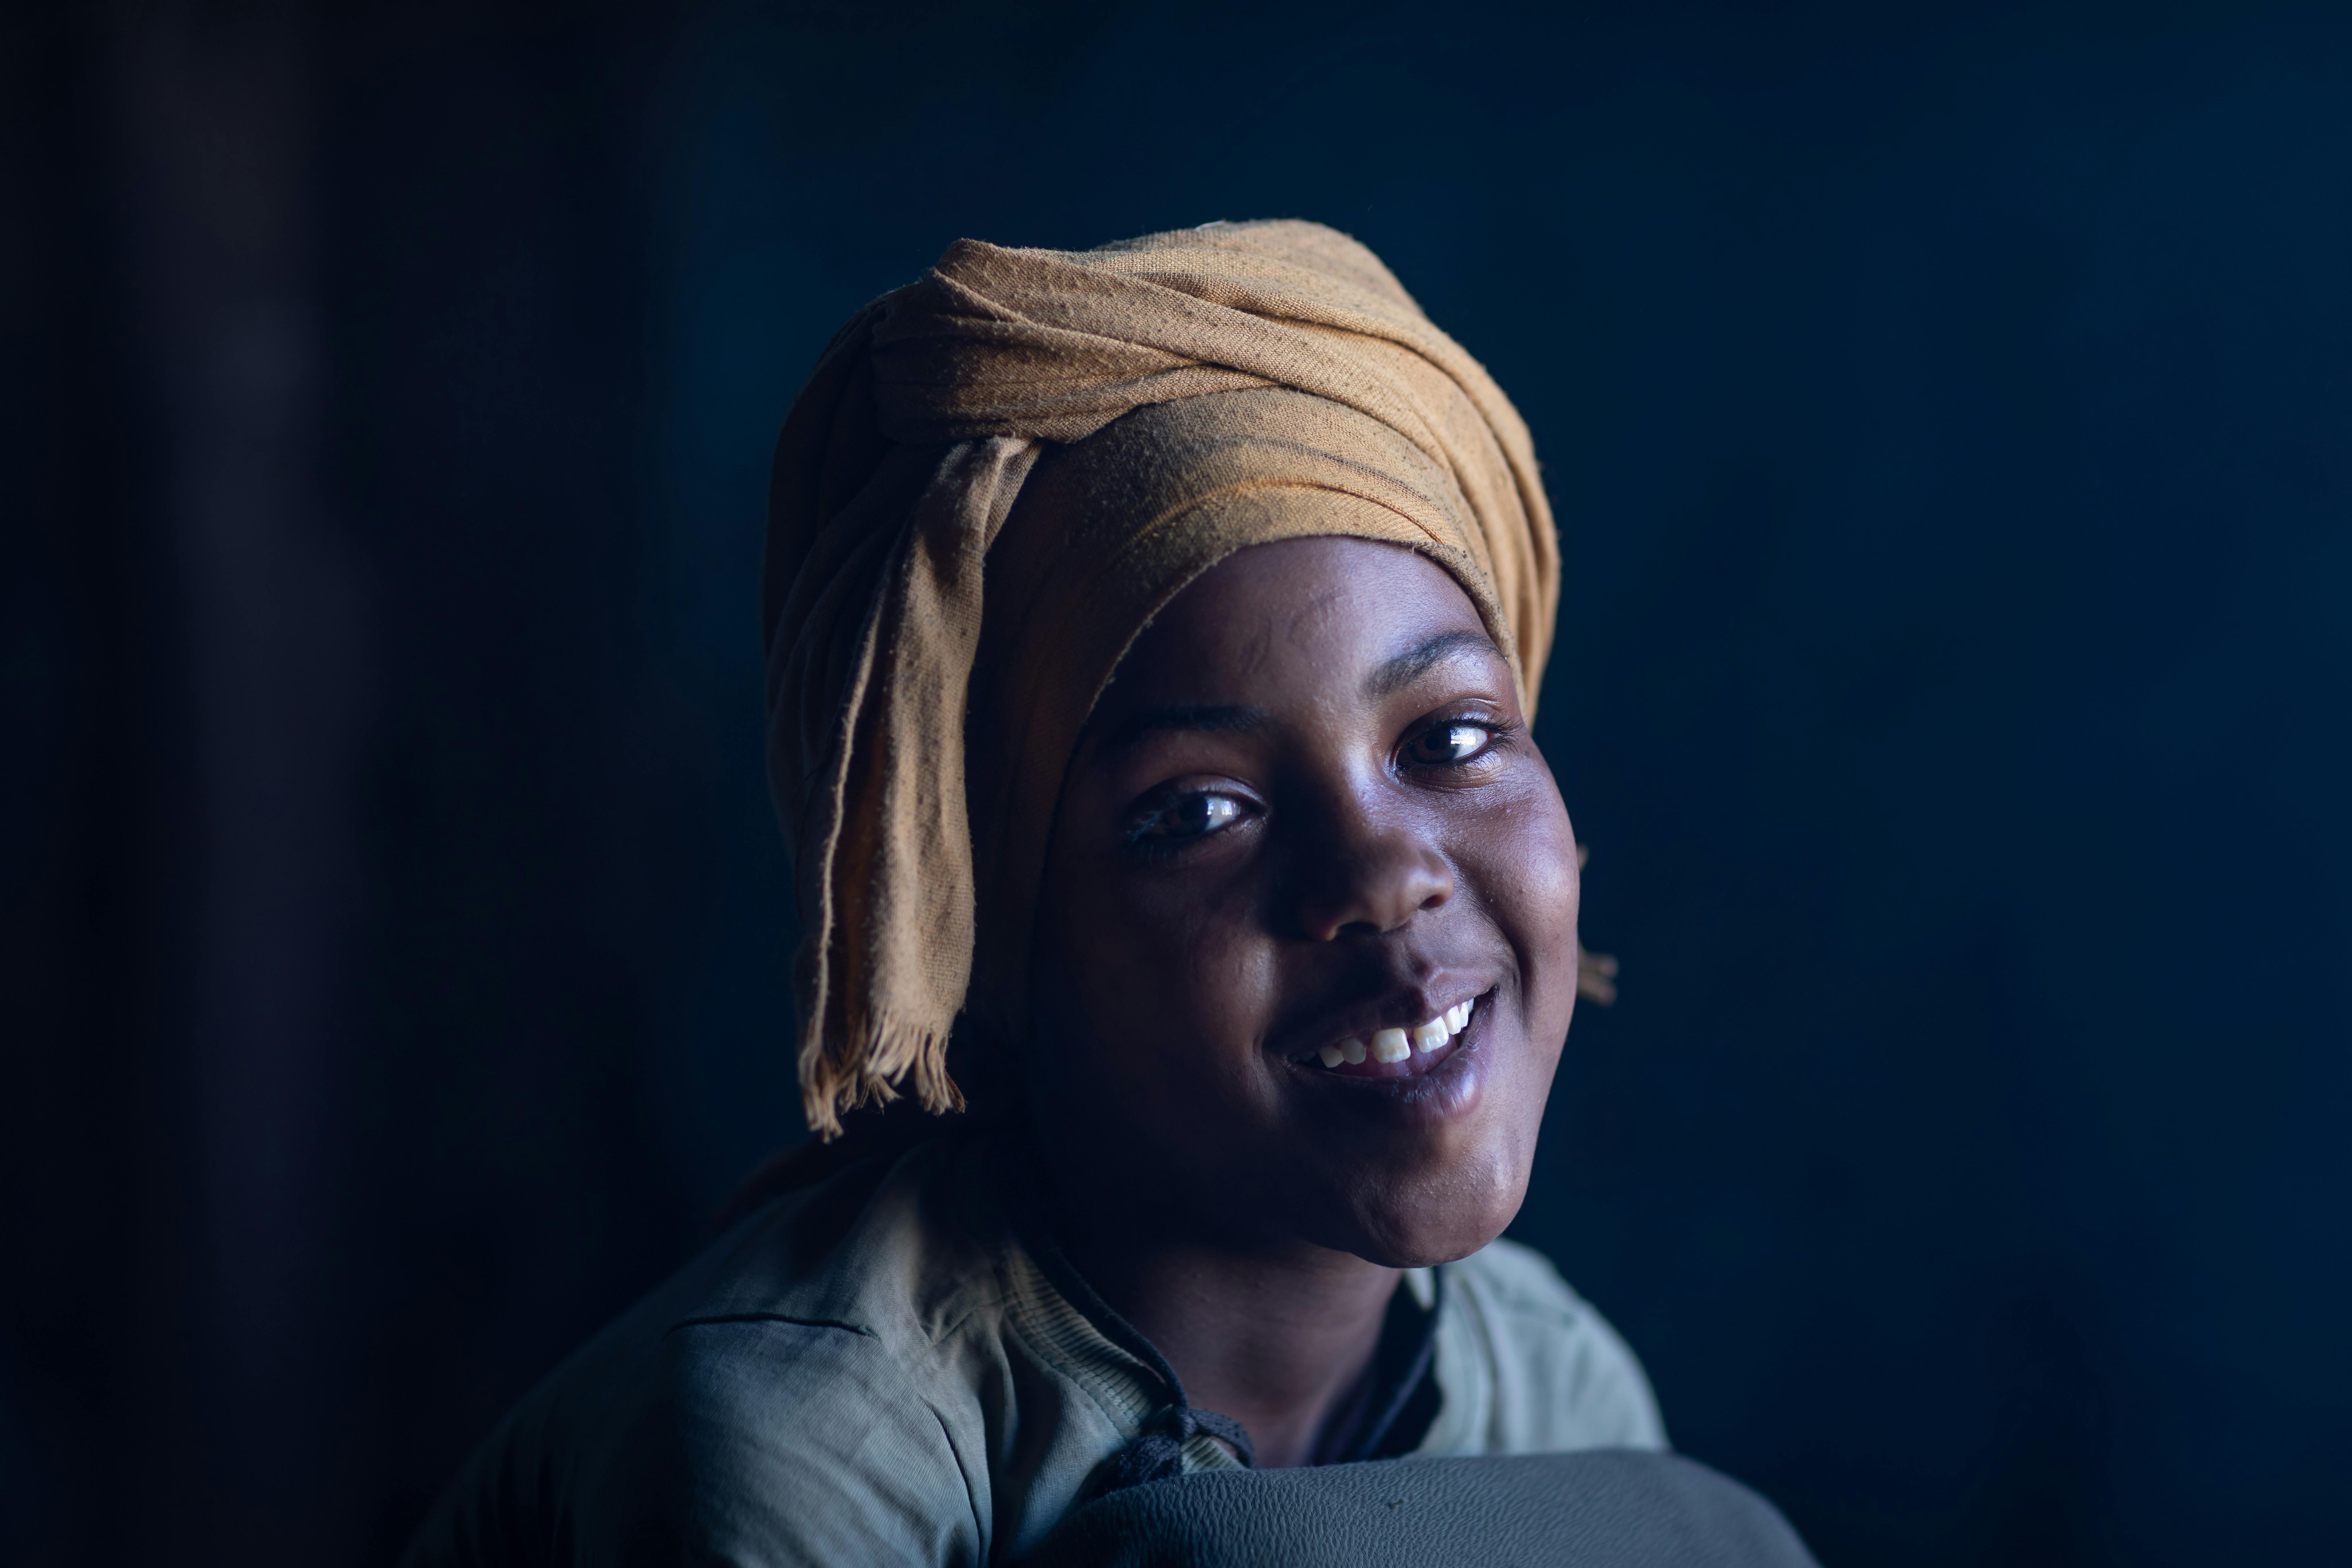 Etiopia:Mekiya sorride, è stata salvata dalla mutilazione genitale a cui la famiglia voleva sottoporla. Questo grazie alla sua migliore amica